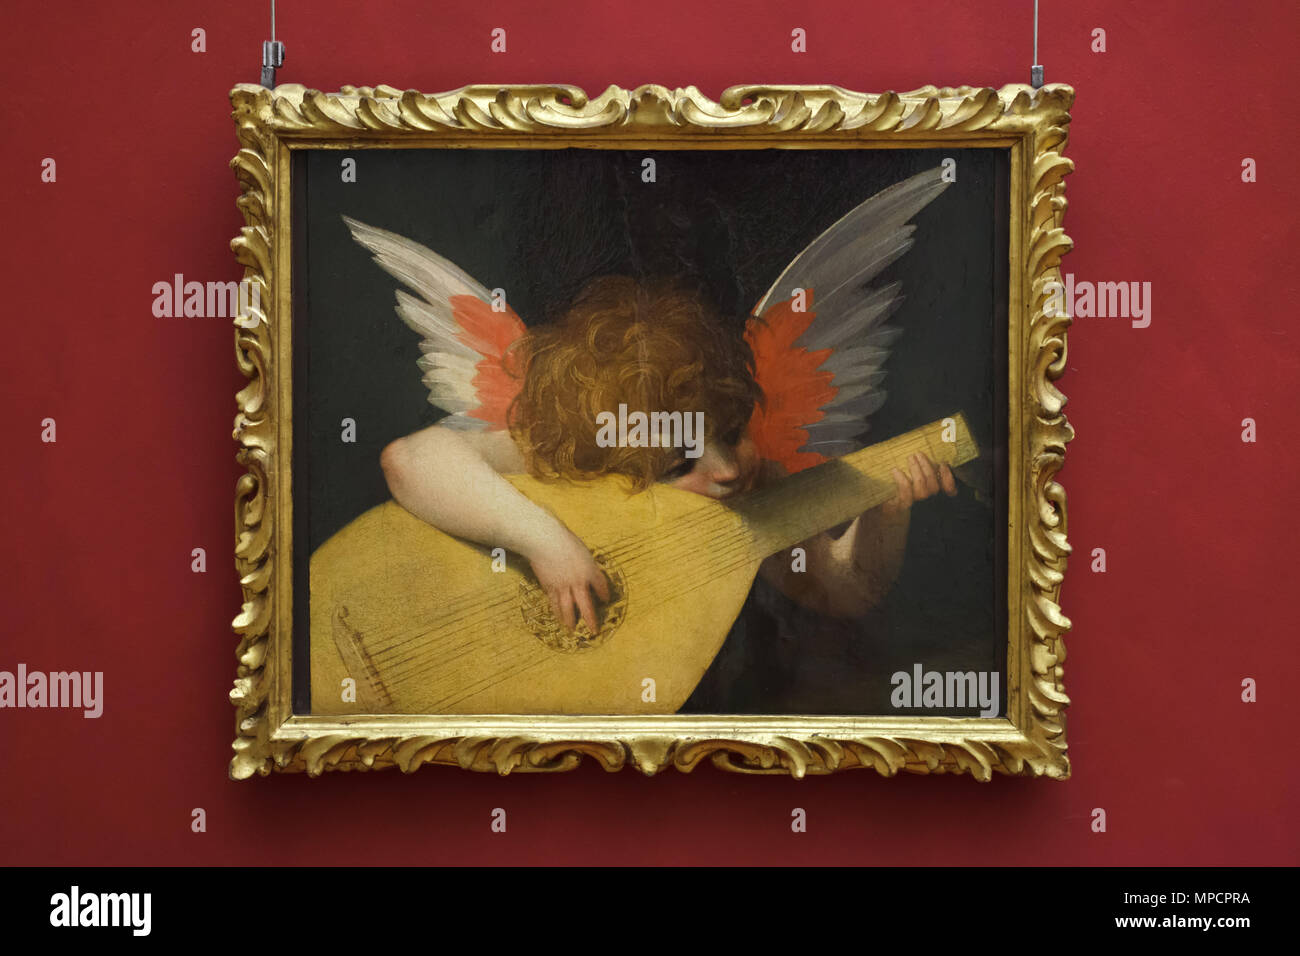 Malerei 'Musical Engel' (1521) von Italienischen manieristischen Malers Rosso Fiorentino in den Uffizien (Galleria degli Uffizi) in Florenz, Toskana, Italien. Stockfoto